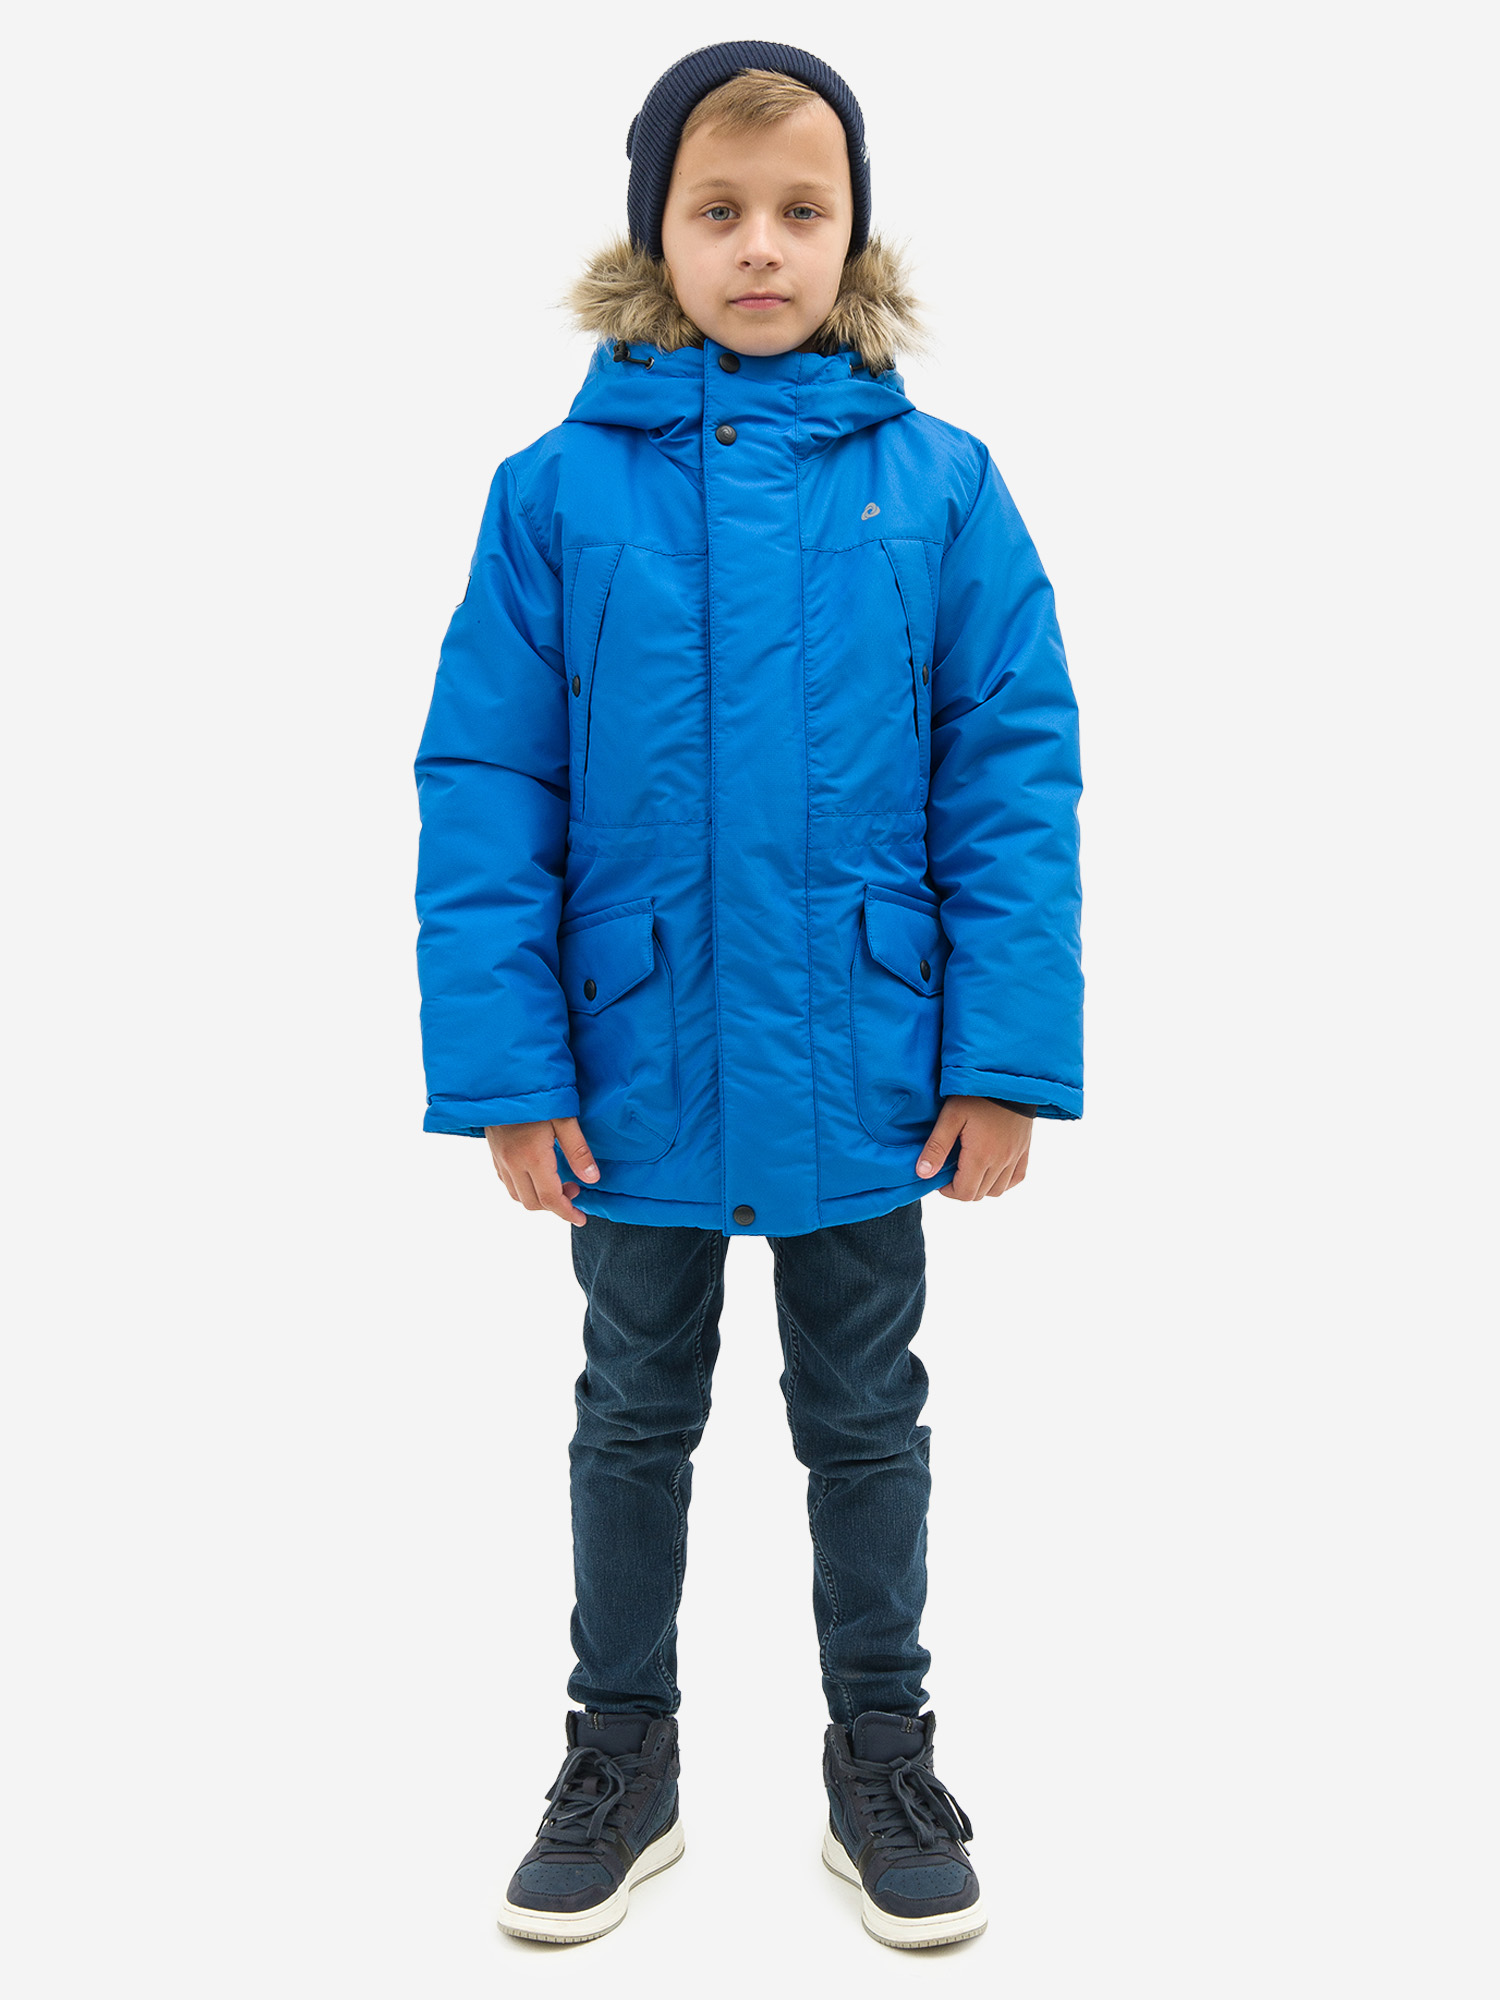 Куртка детская зимняя CosmoTex, Голубой valianly парка зимняя подростковая для мальчика 9343